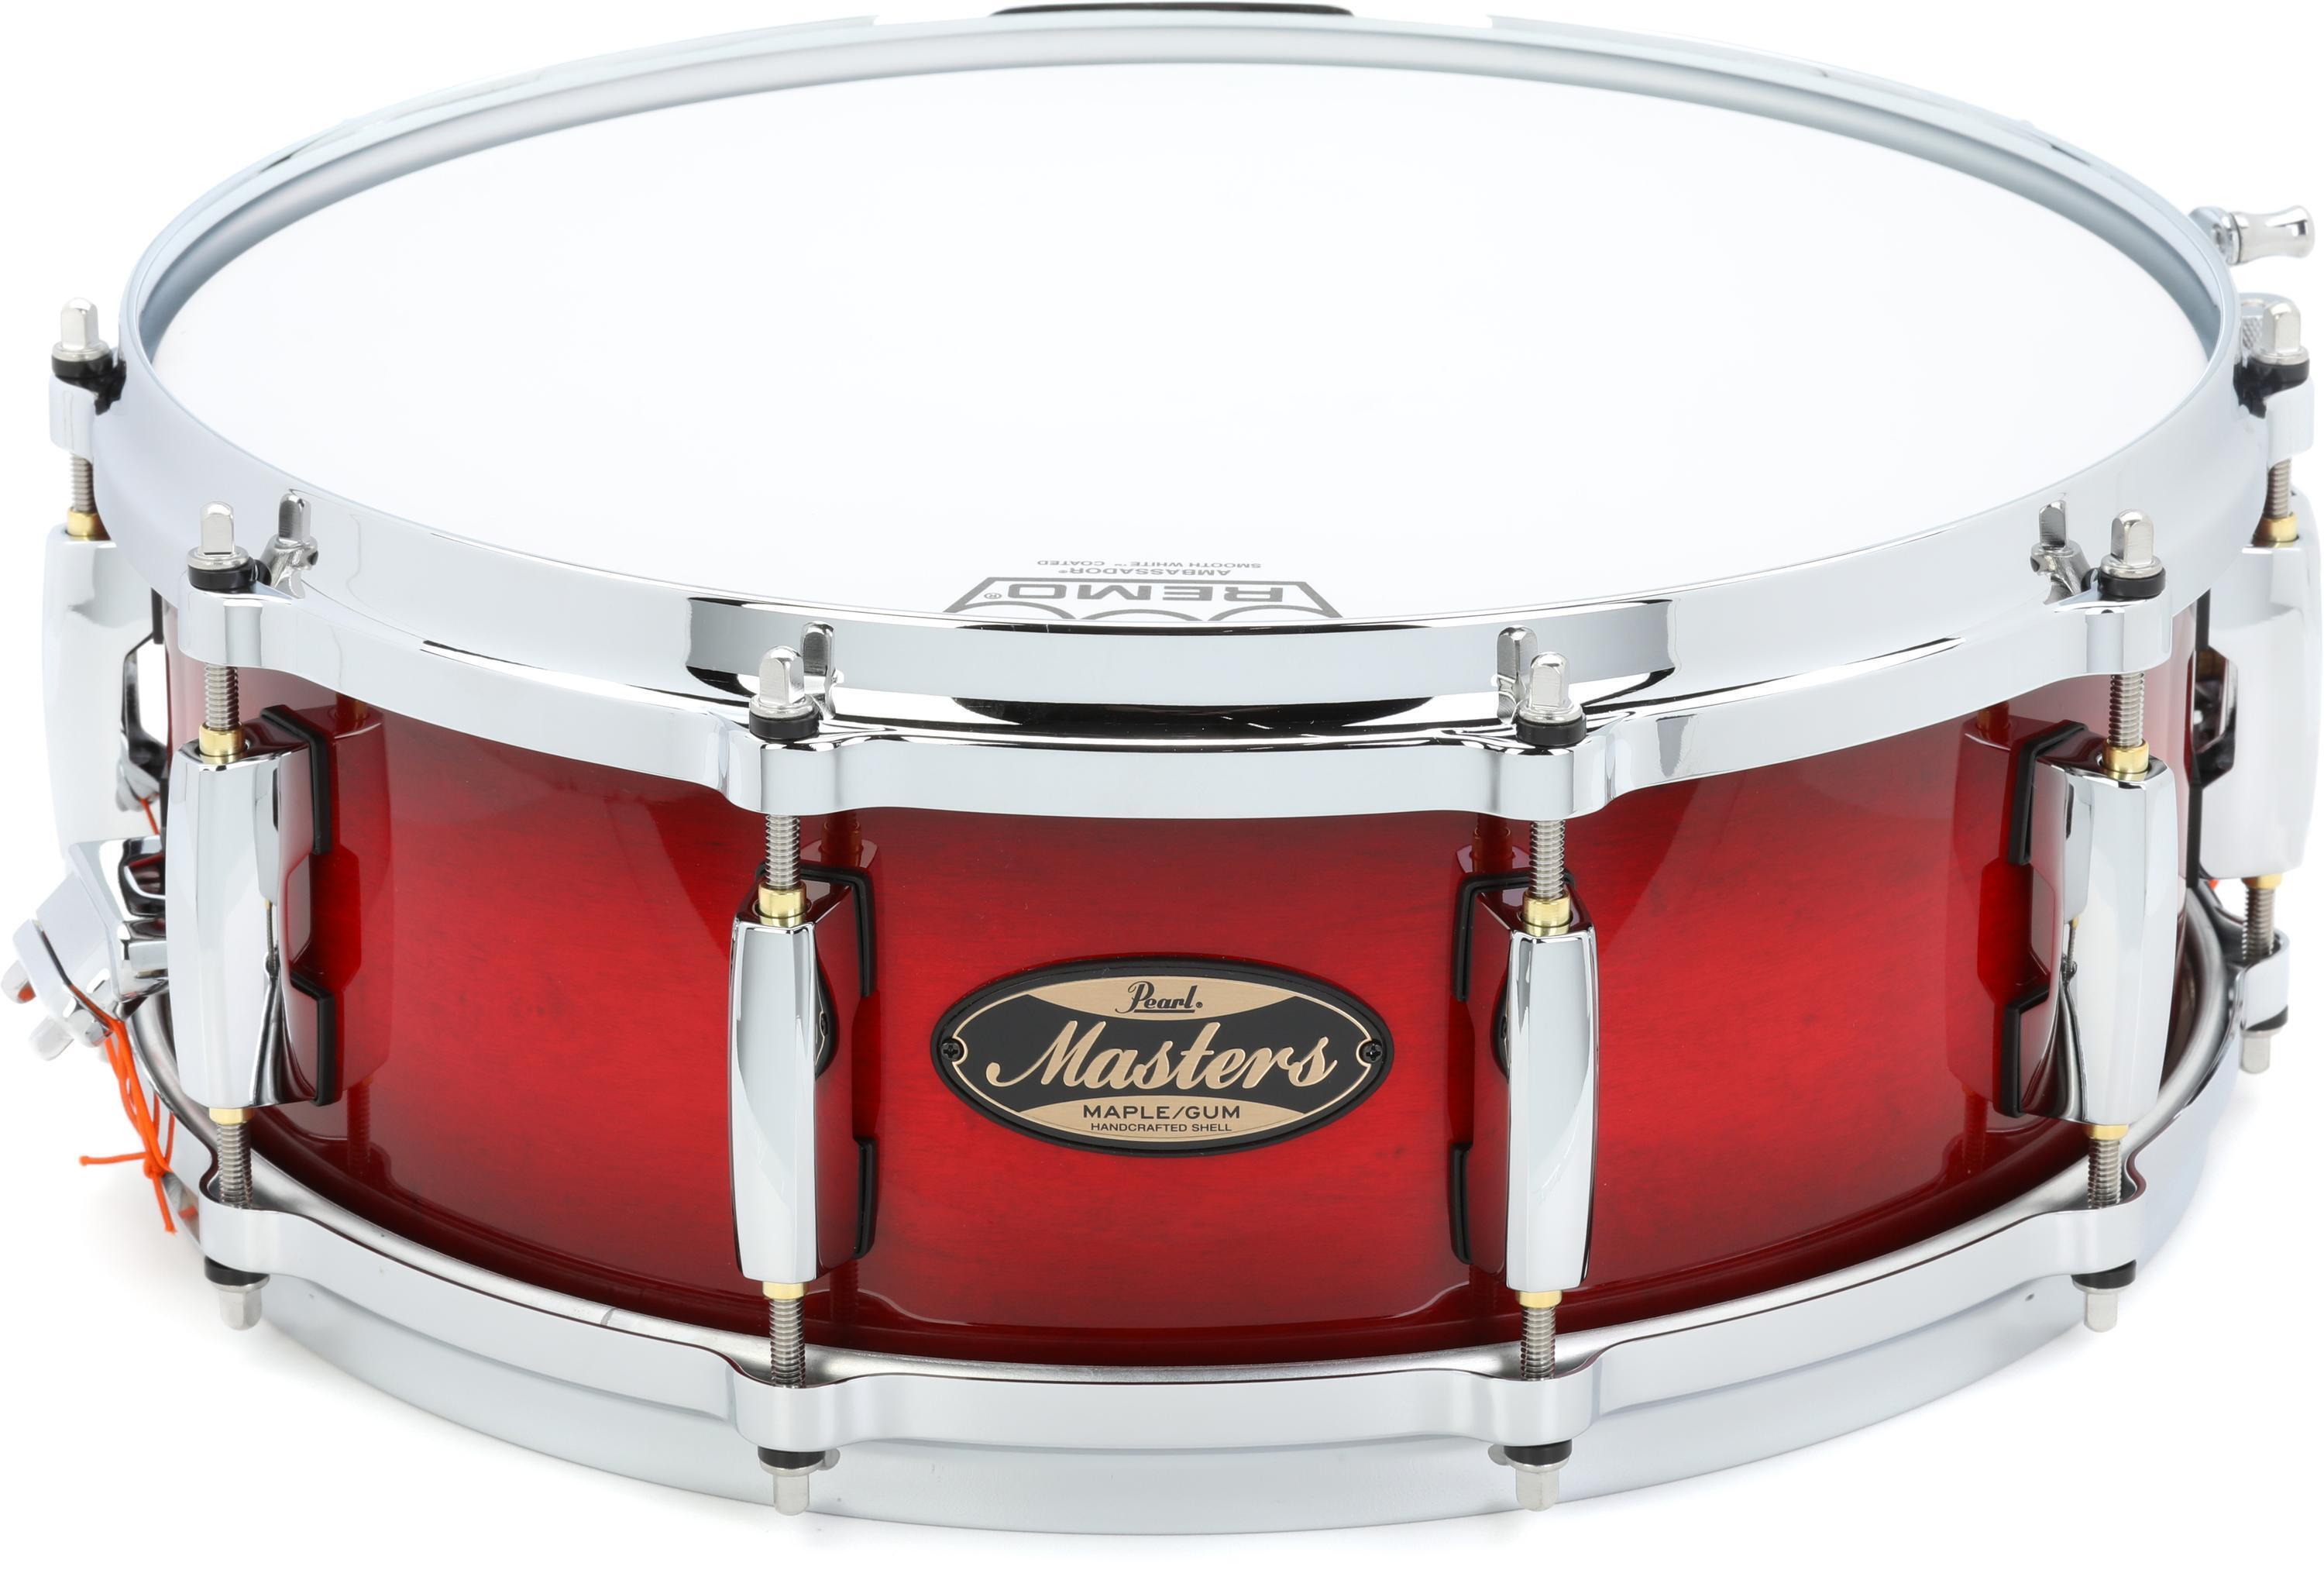 Masters Maple Gum Snare Drum - 5 x 14-inch - Deep Redburst